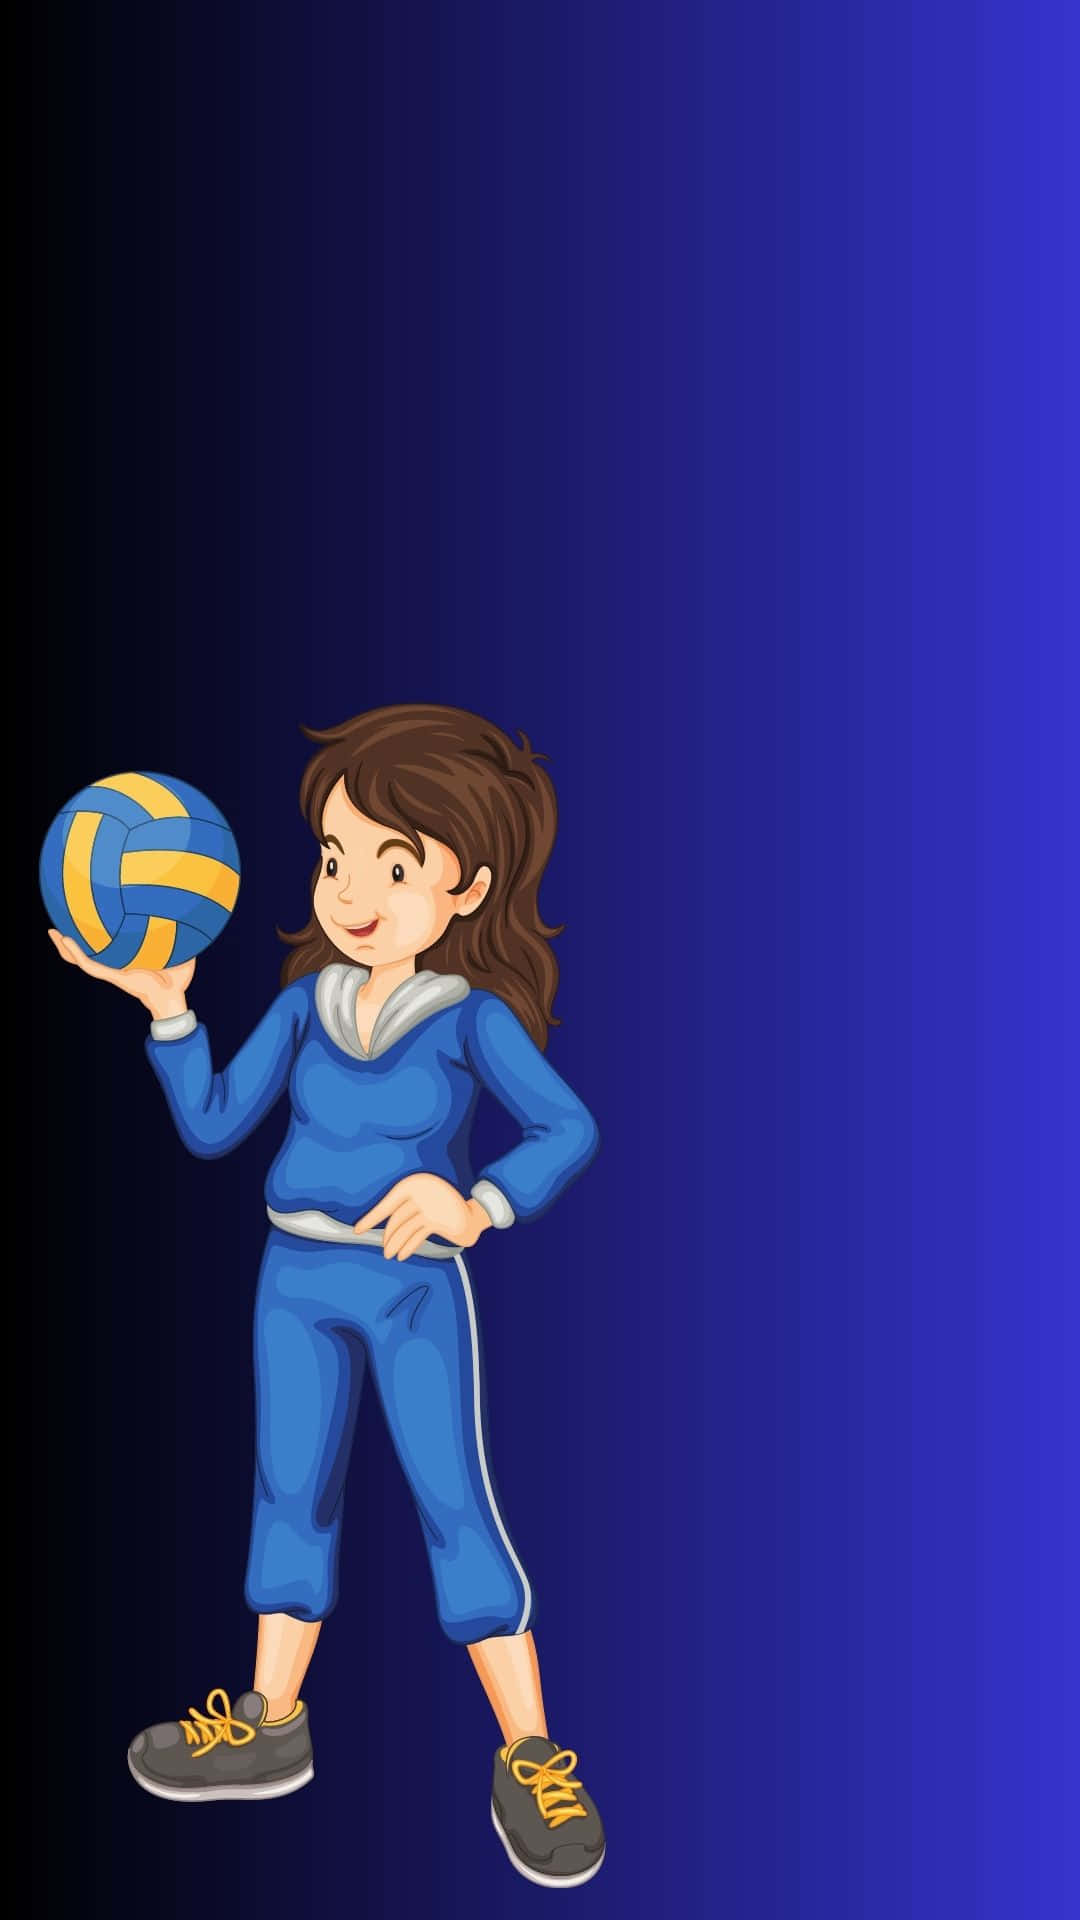 Fondode Pantalla Deportivo Con Una Dama De Azul Sosteniendo Una Pelota De Voleibol.